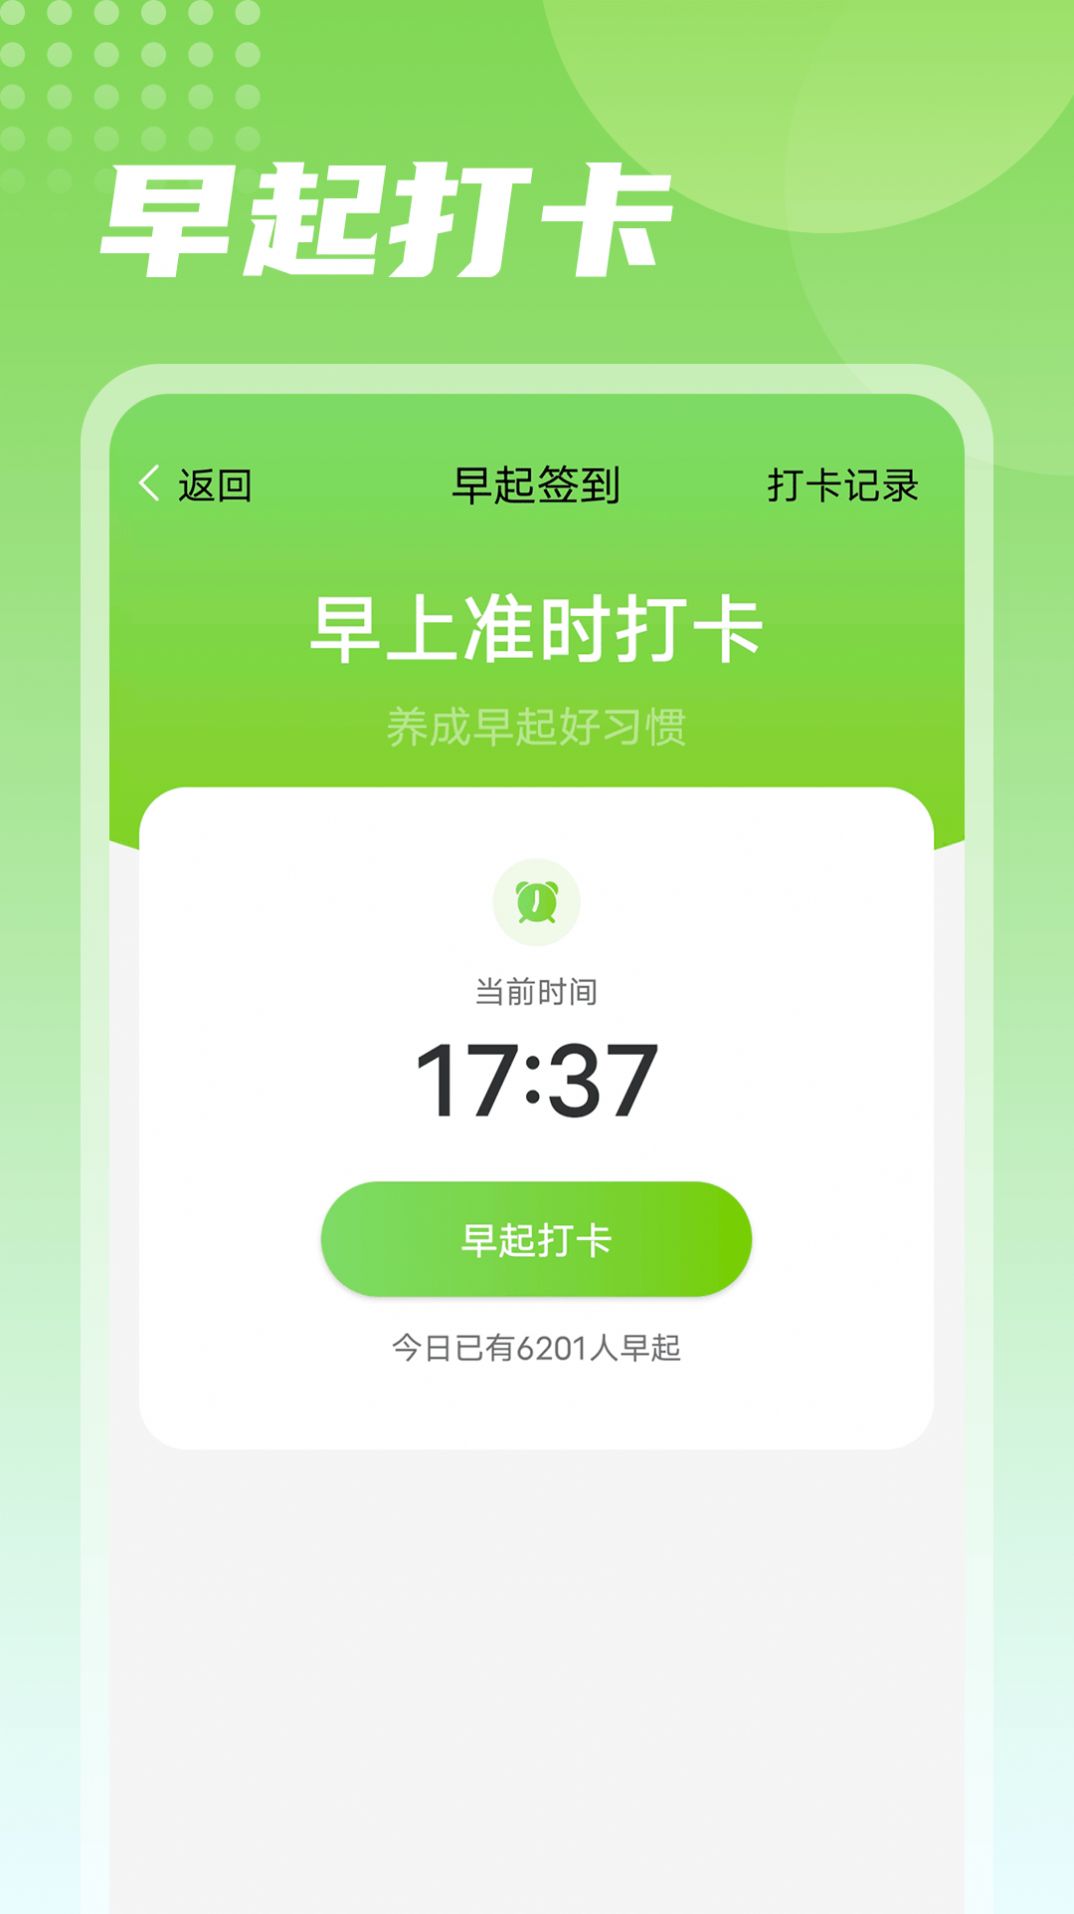 熊猫走路运动app安卓版下载图片2